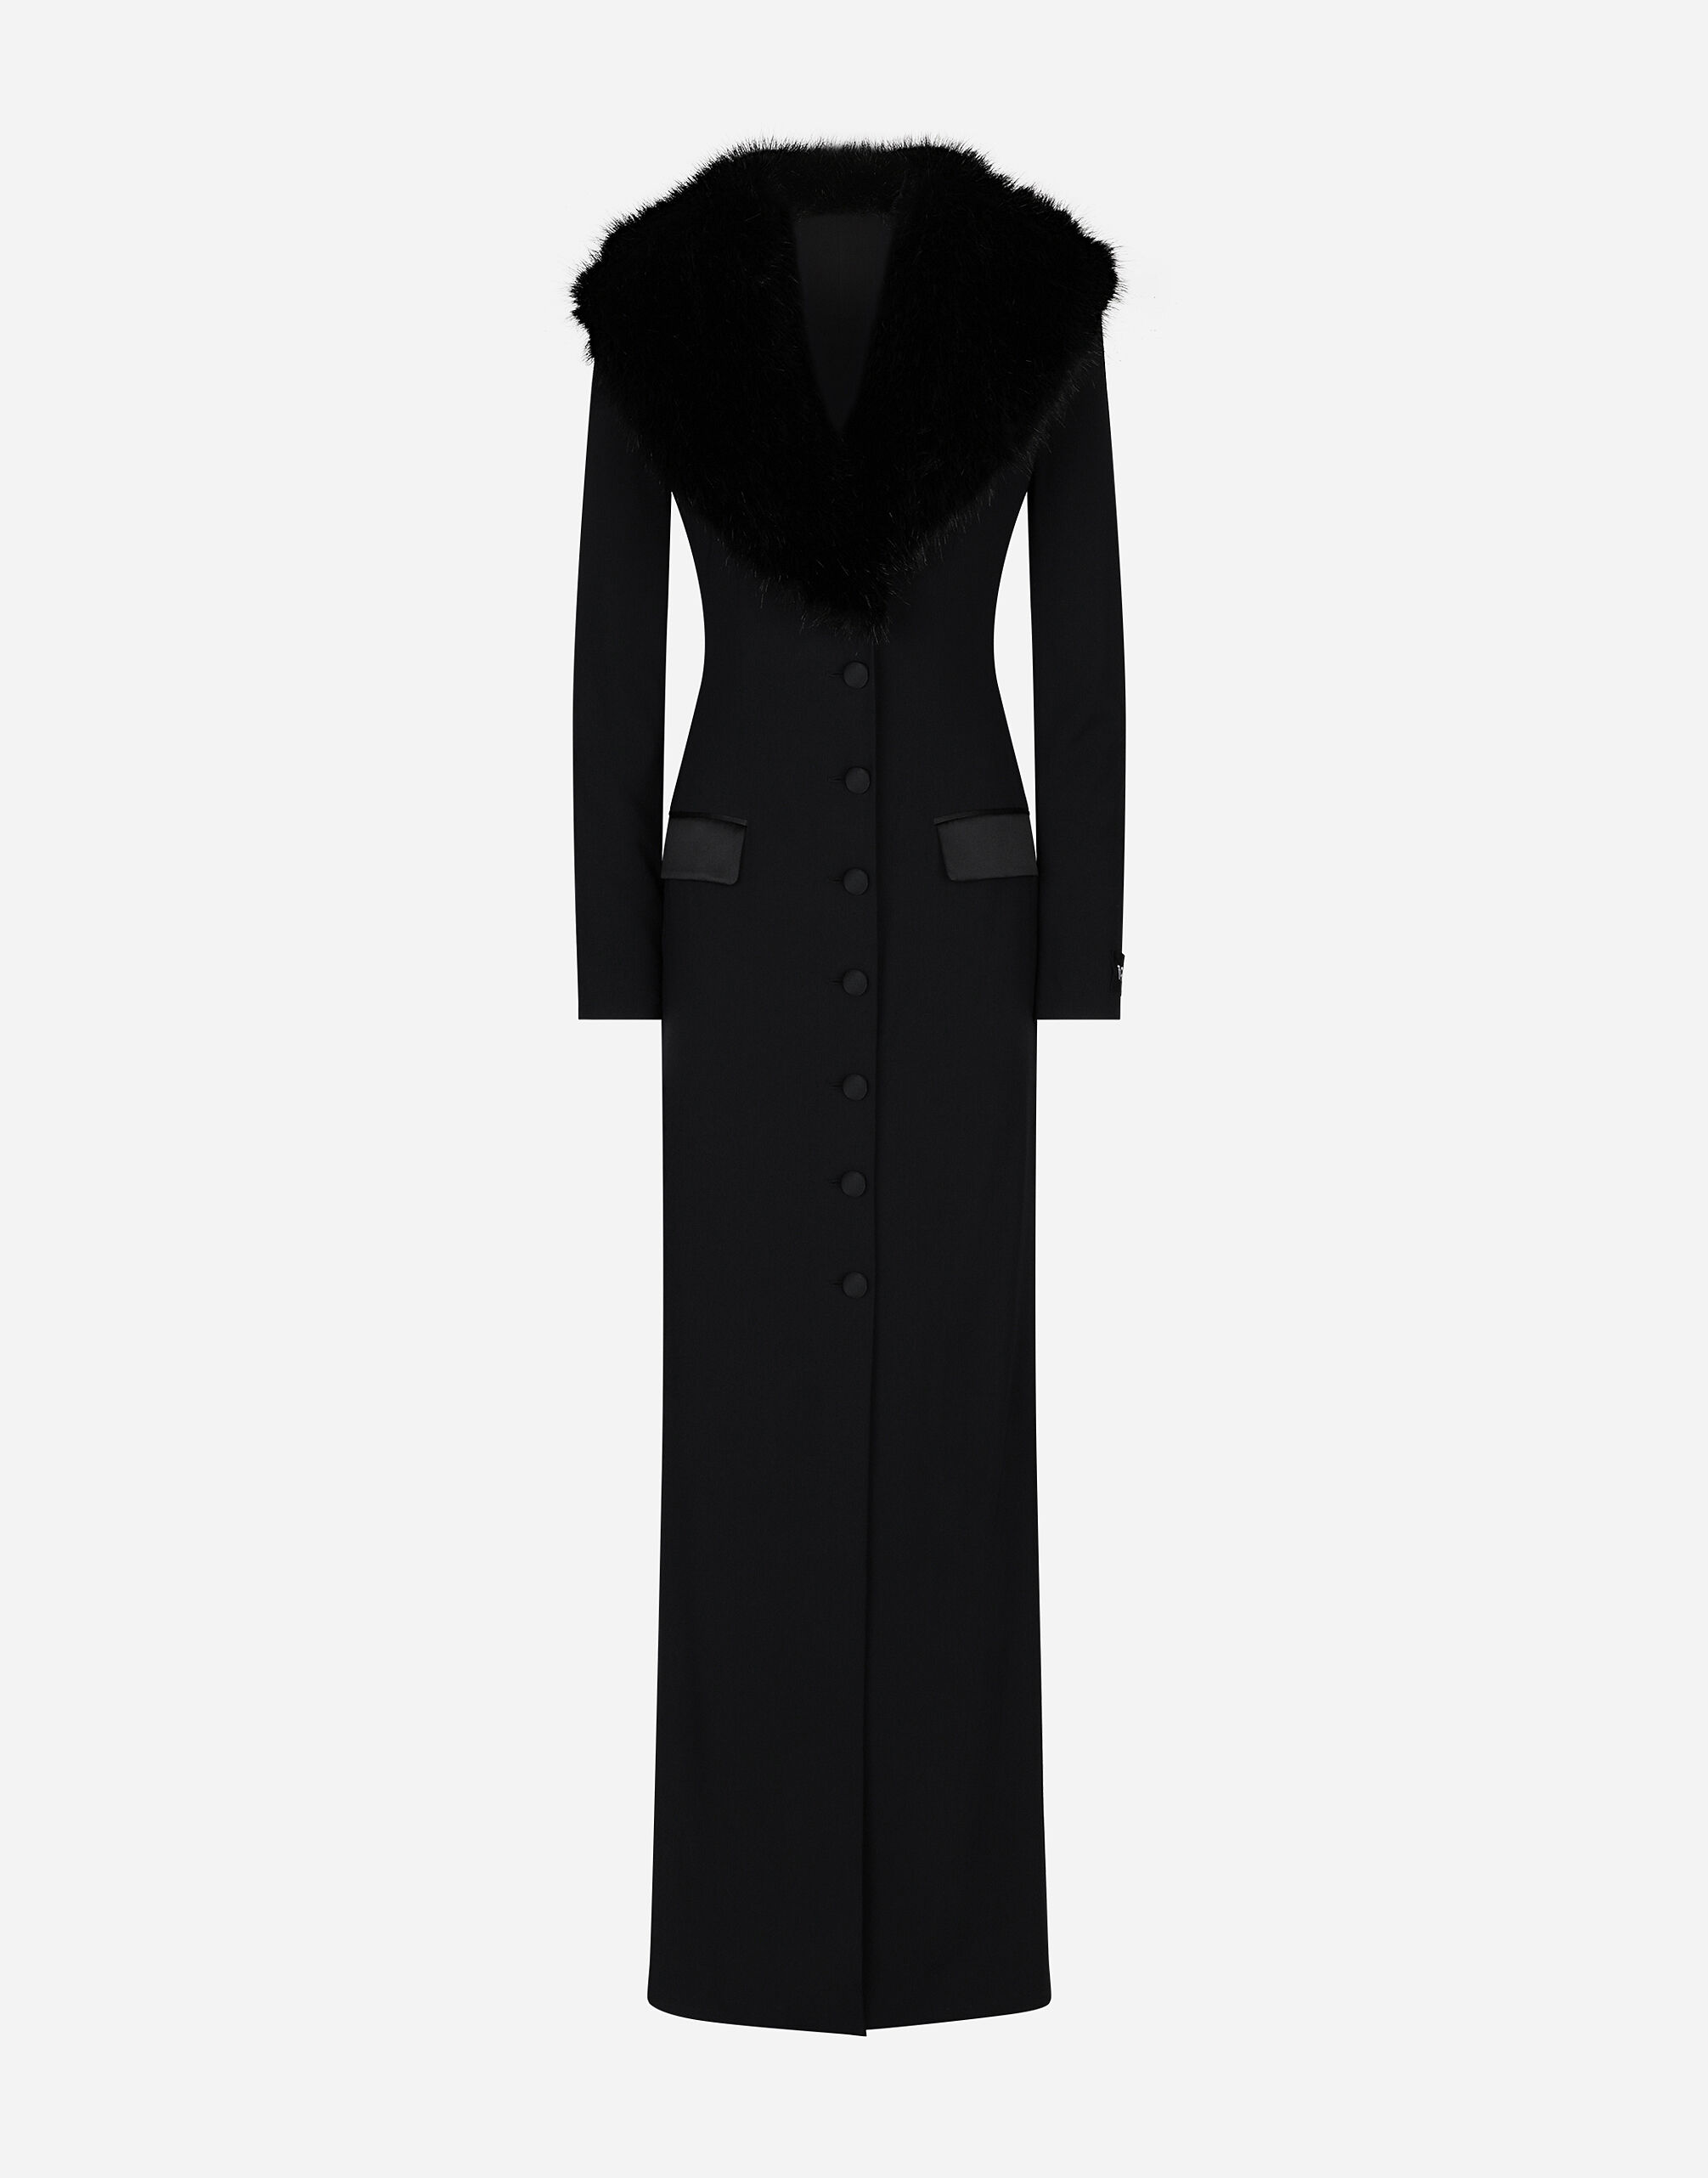 Dolce & Gabbana Abrigo largo en georgette de seda con cuello de pelo sintético Negro F6DFDTFLSIO